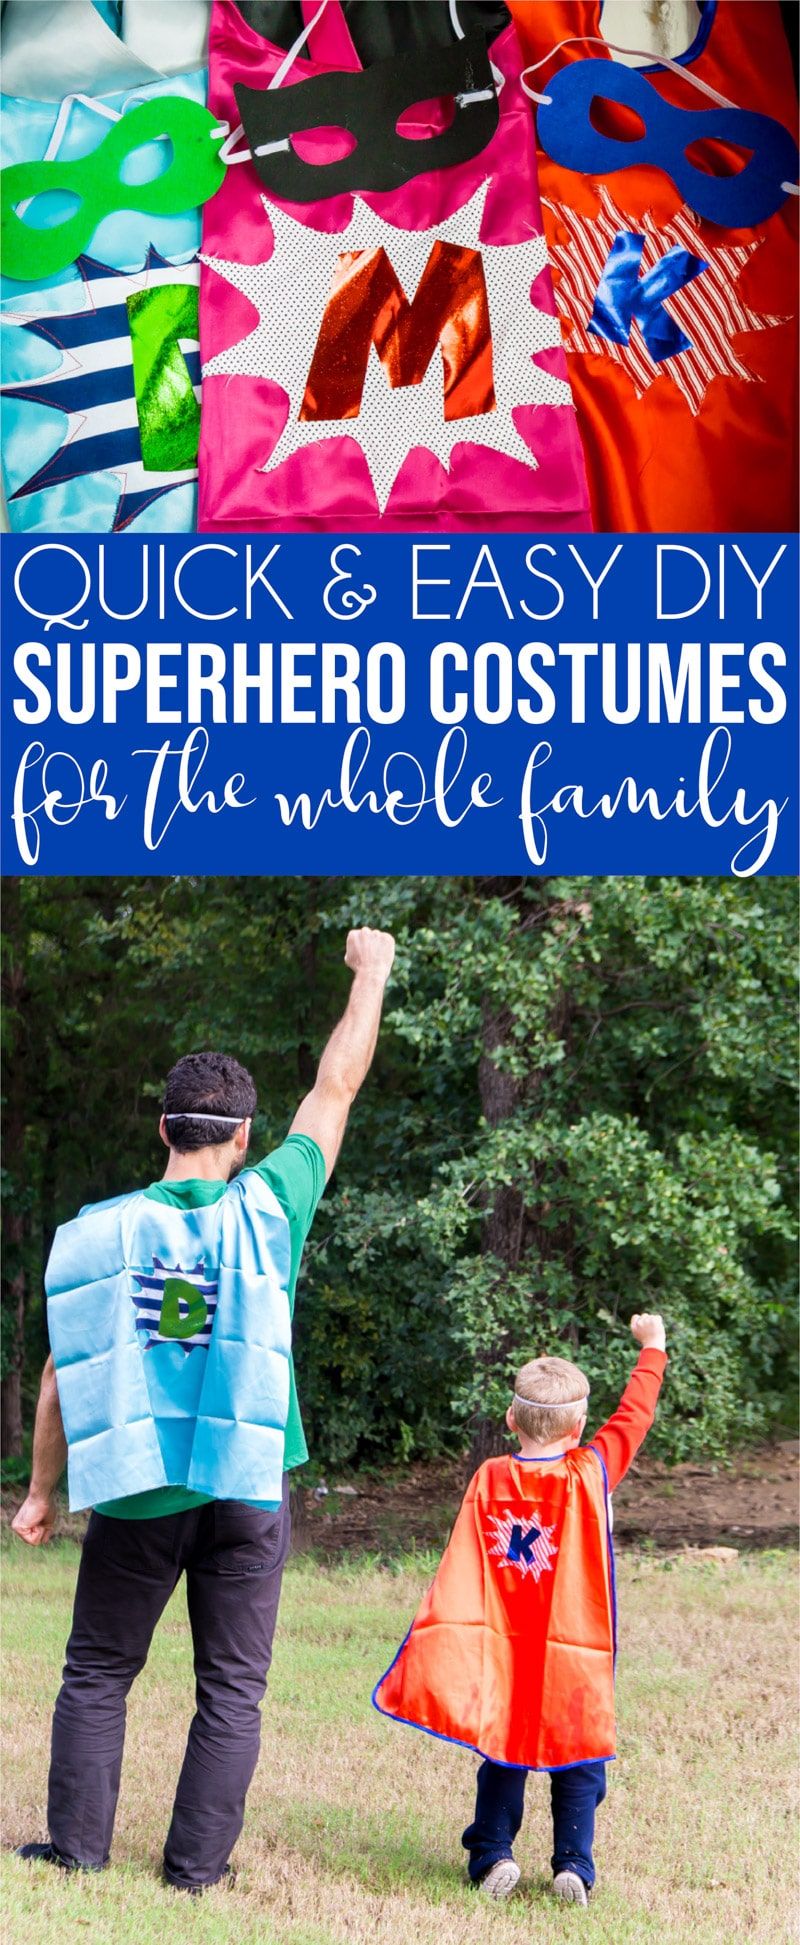 Un collage de imágenes que muestran ideas familiares de disfraces de superhéroe DIY